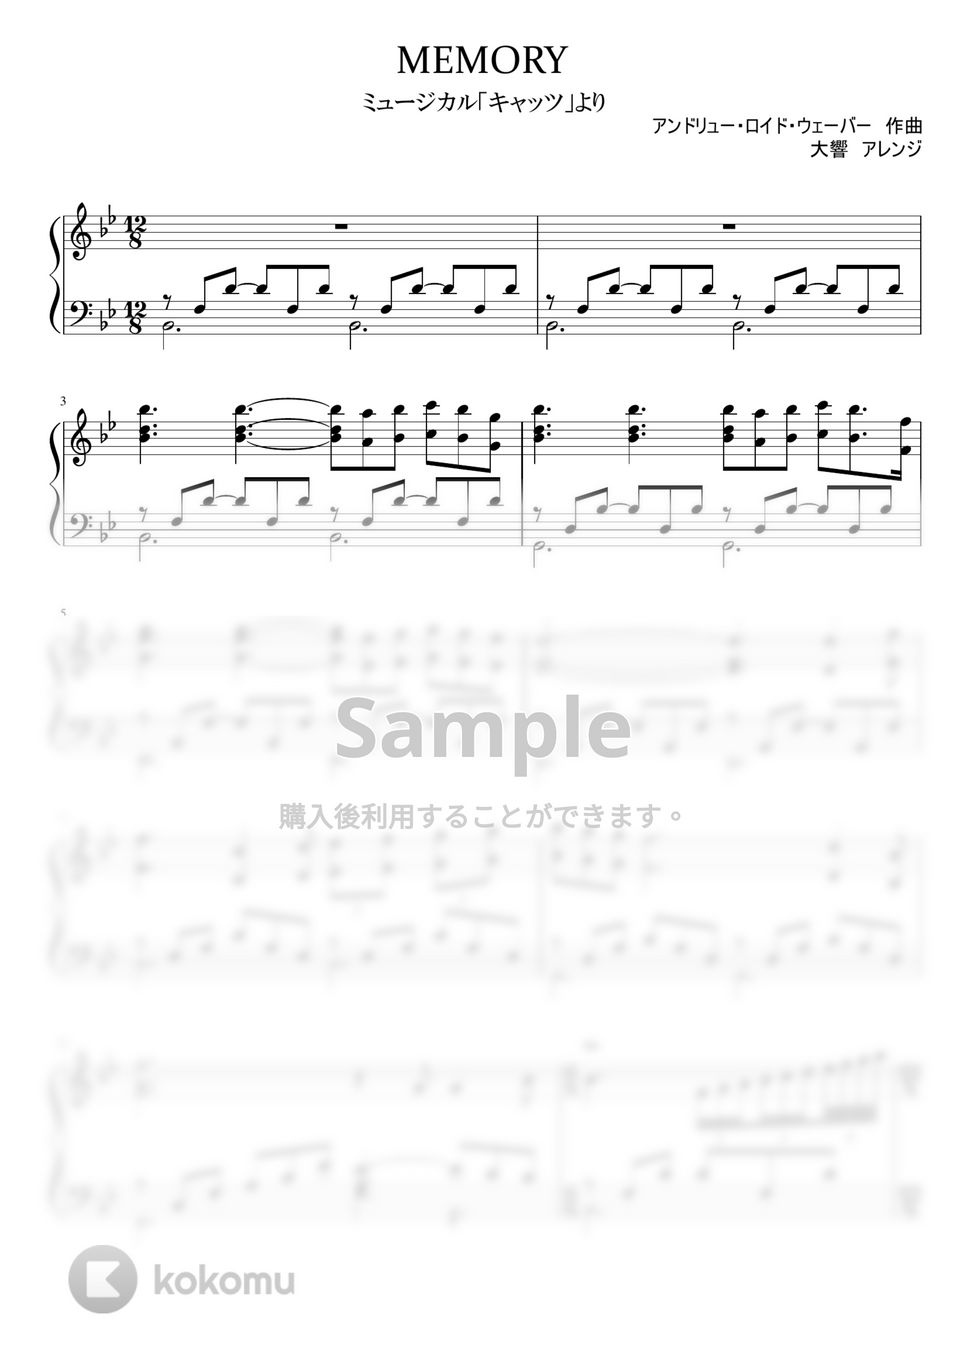 アンドリュー・ロイド・ウェーバー - ミュージカル「キャッツ」より MEMORY (ピアノソロ) by 大響